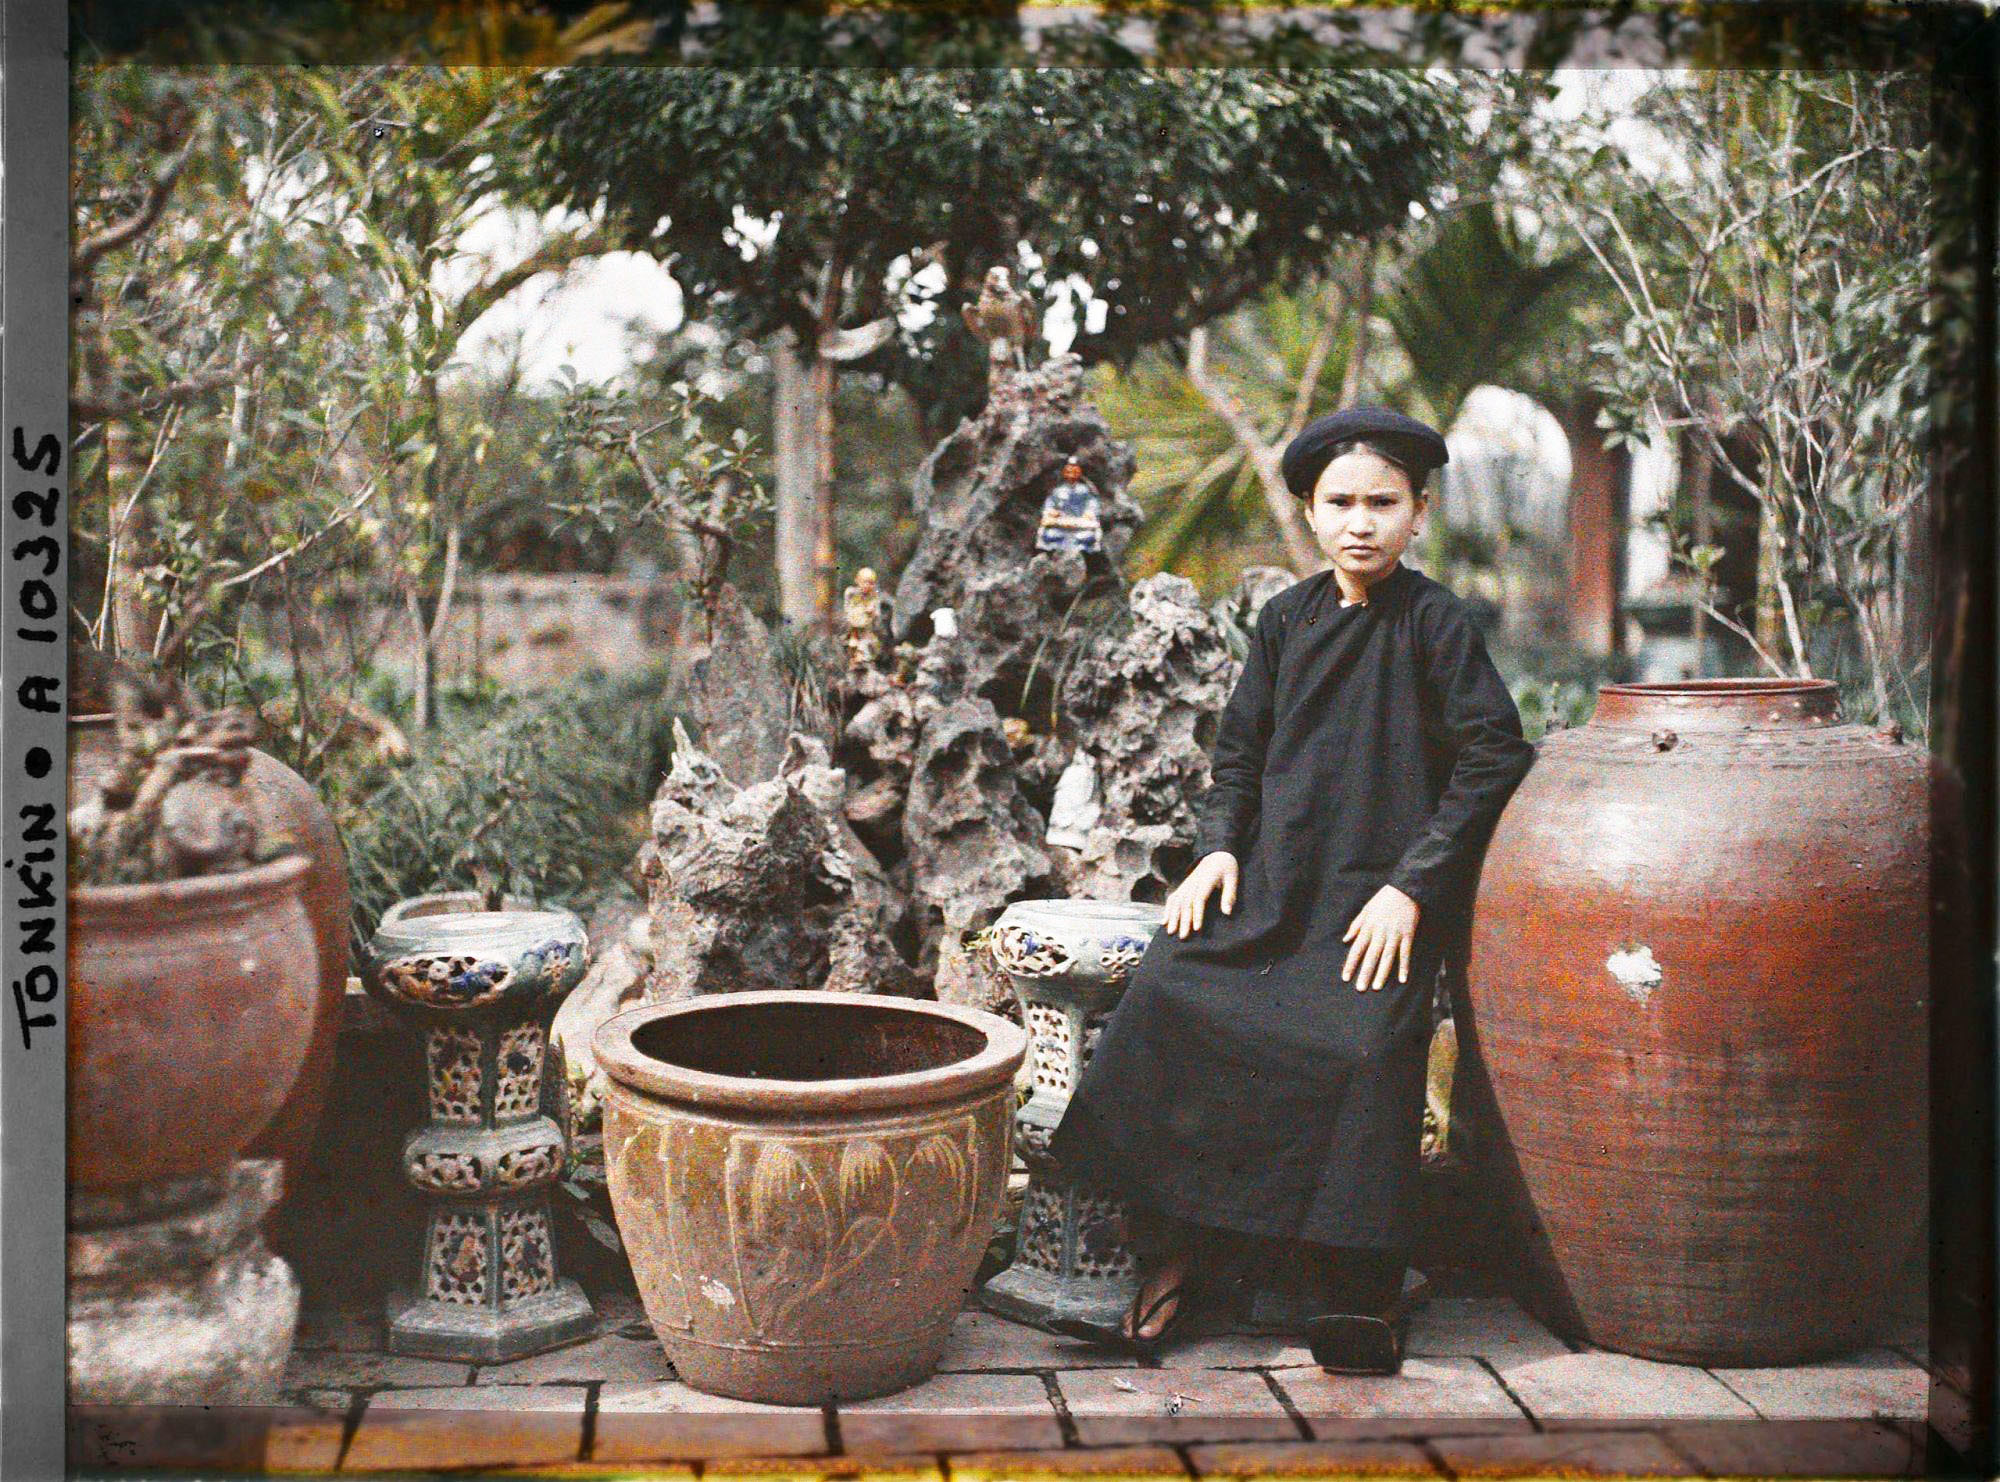 Tiểu thư con một gia đình giàu có ở miền Bắc Việt Nam ngồi trong vườn cảnh nhà mình.